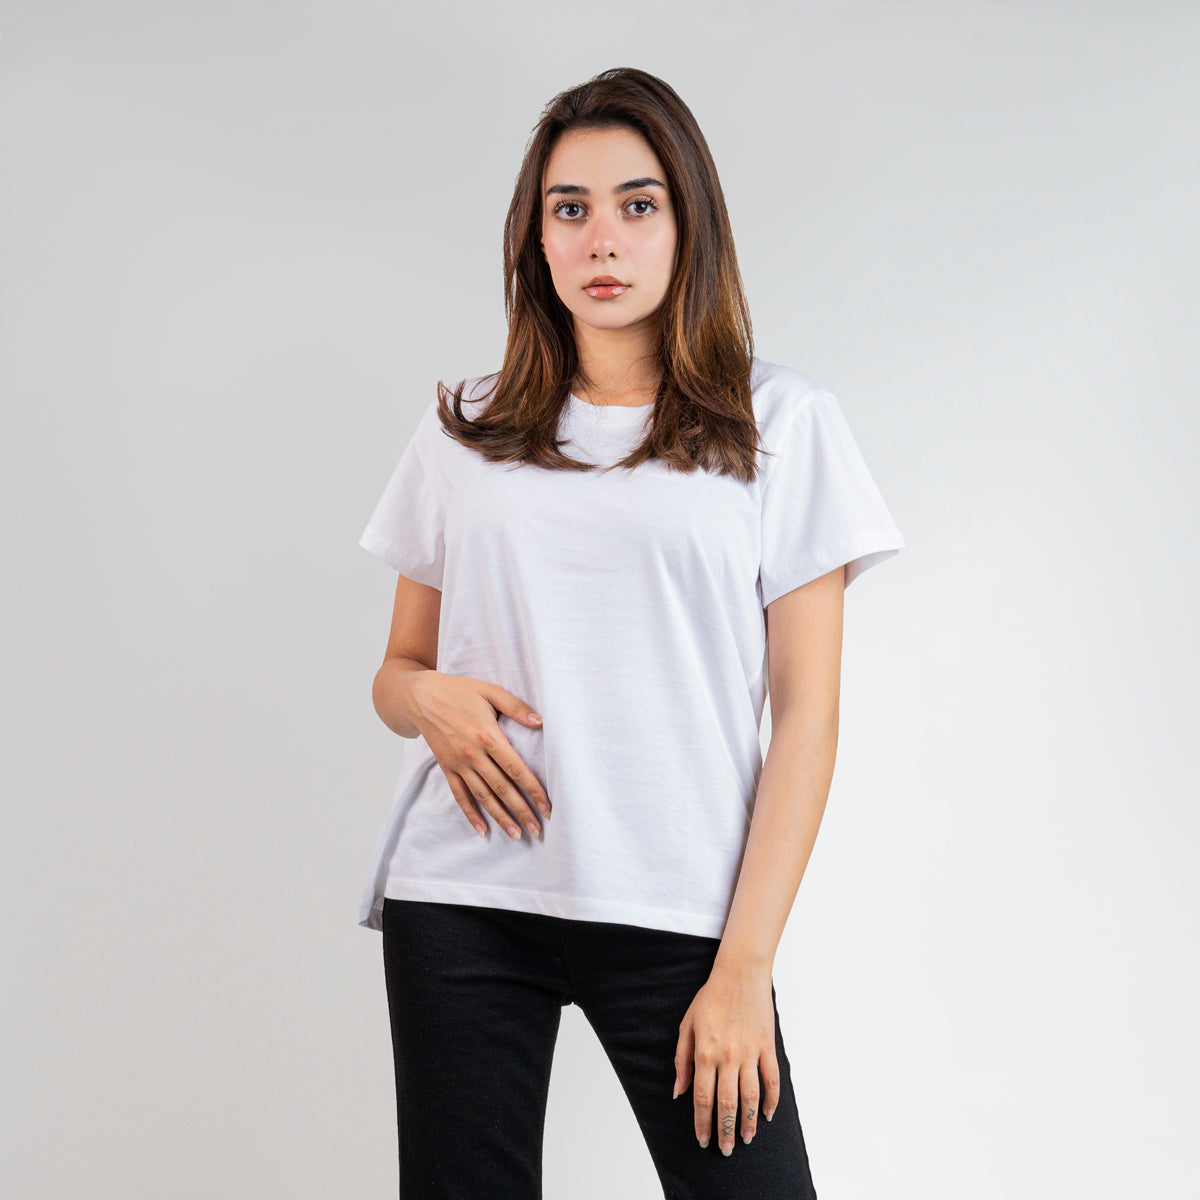 Regular Fit BASIC CREW NECK  White T-Shirt